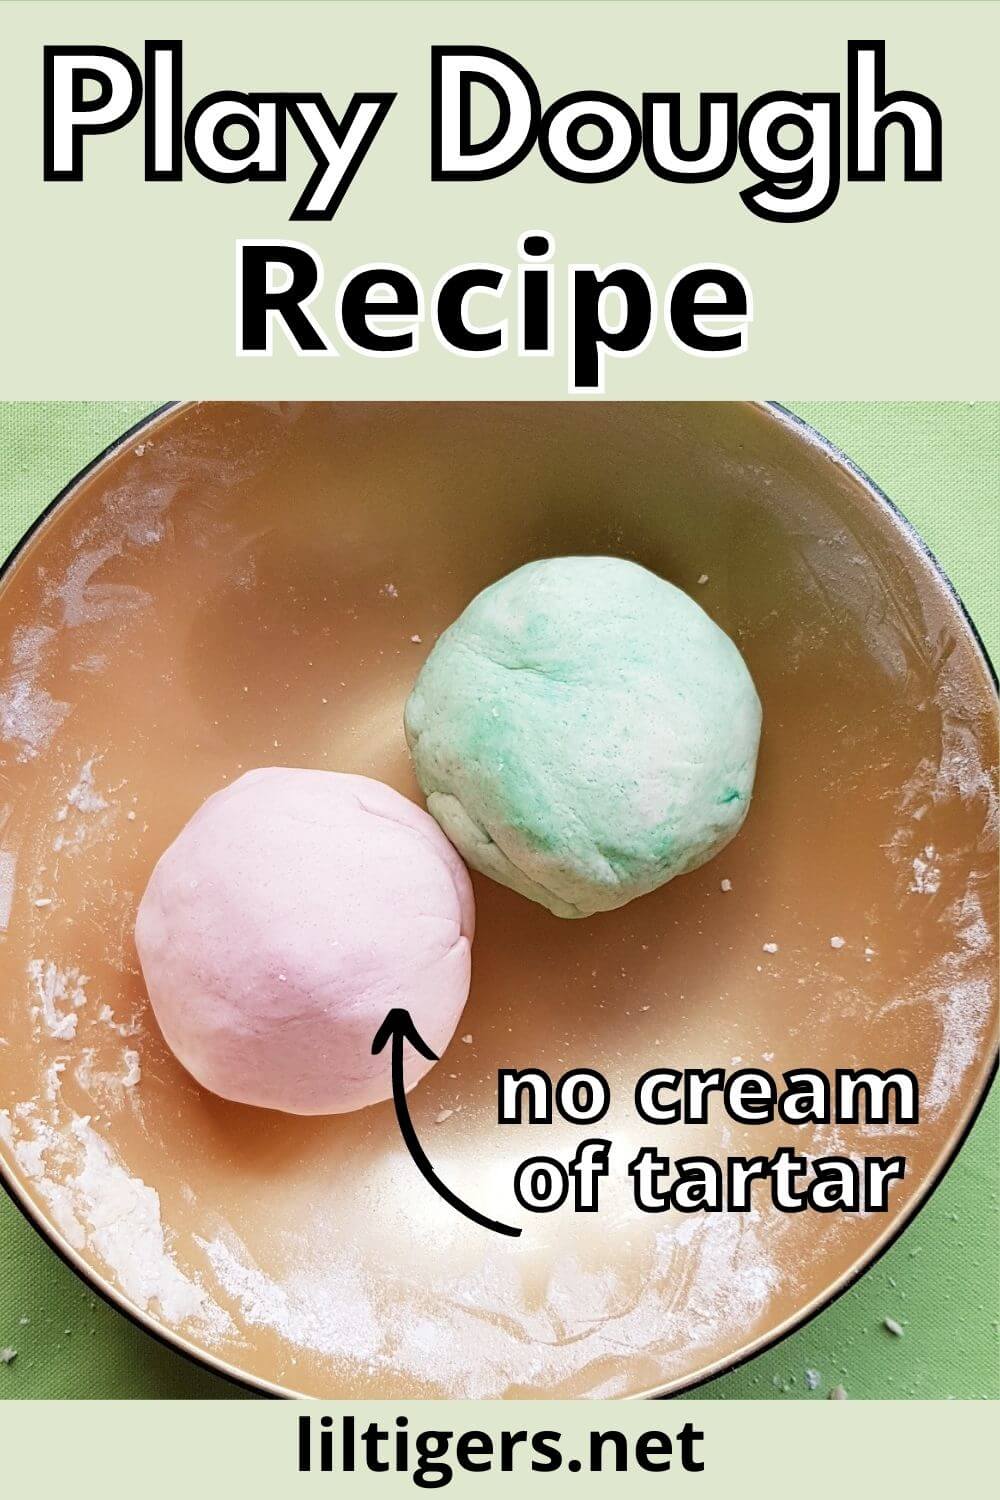 toddler-safe play dough recipe without cream of tartar